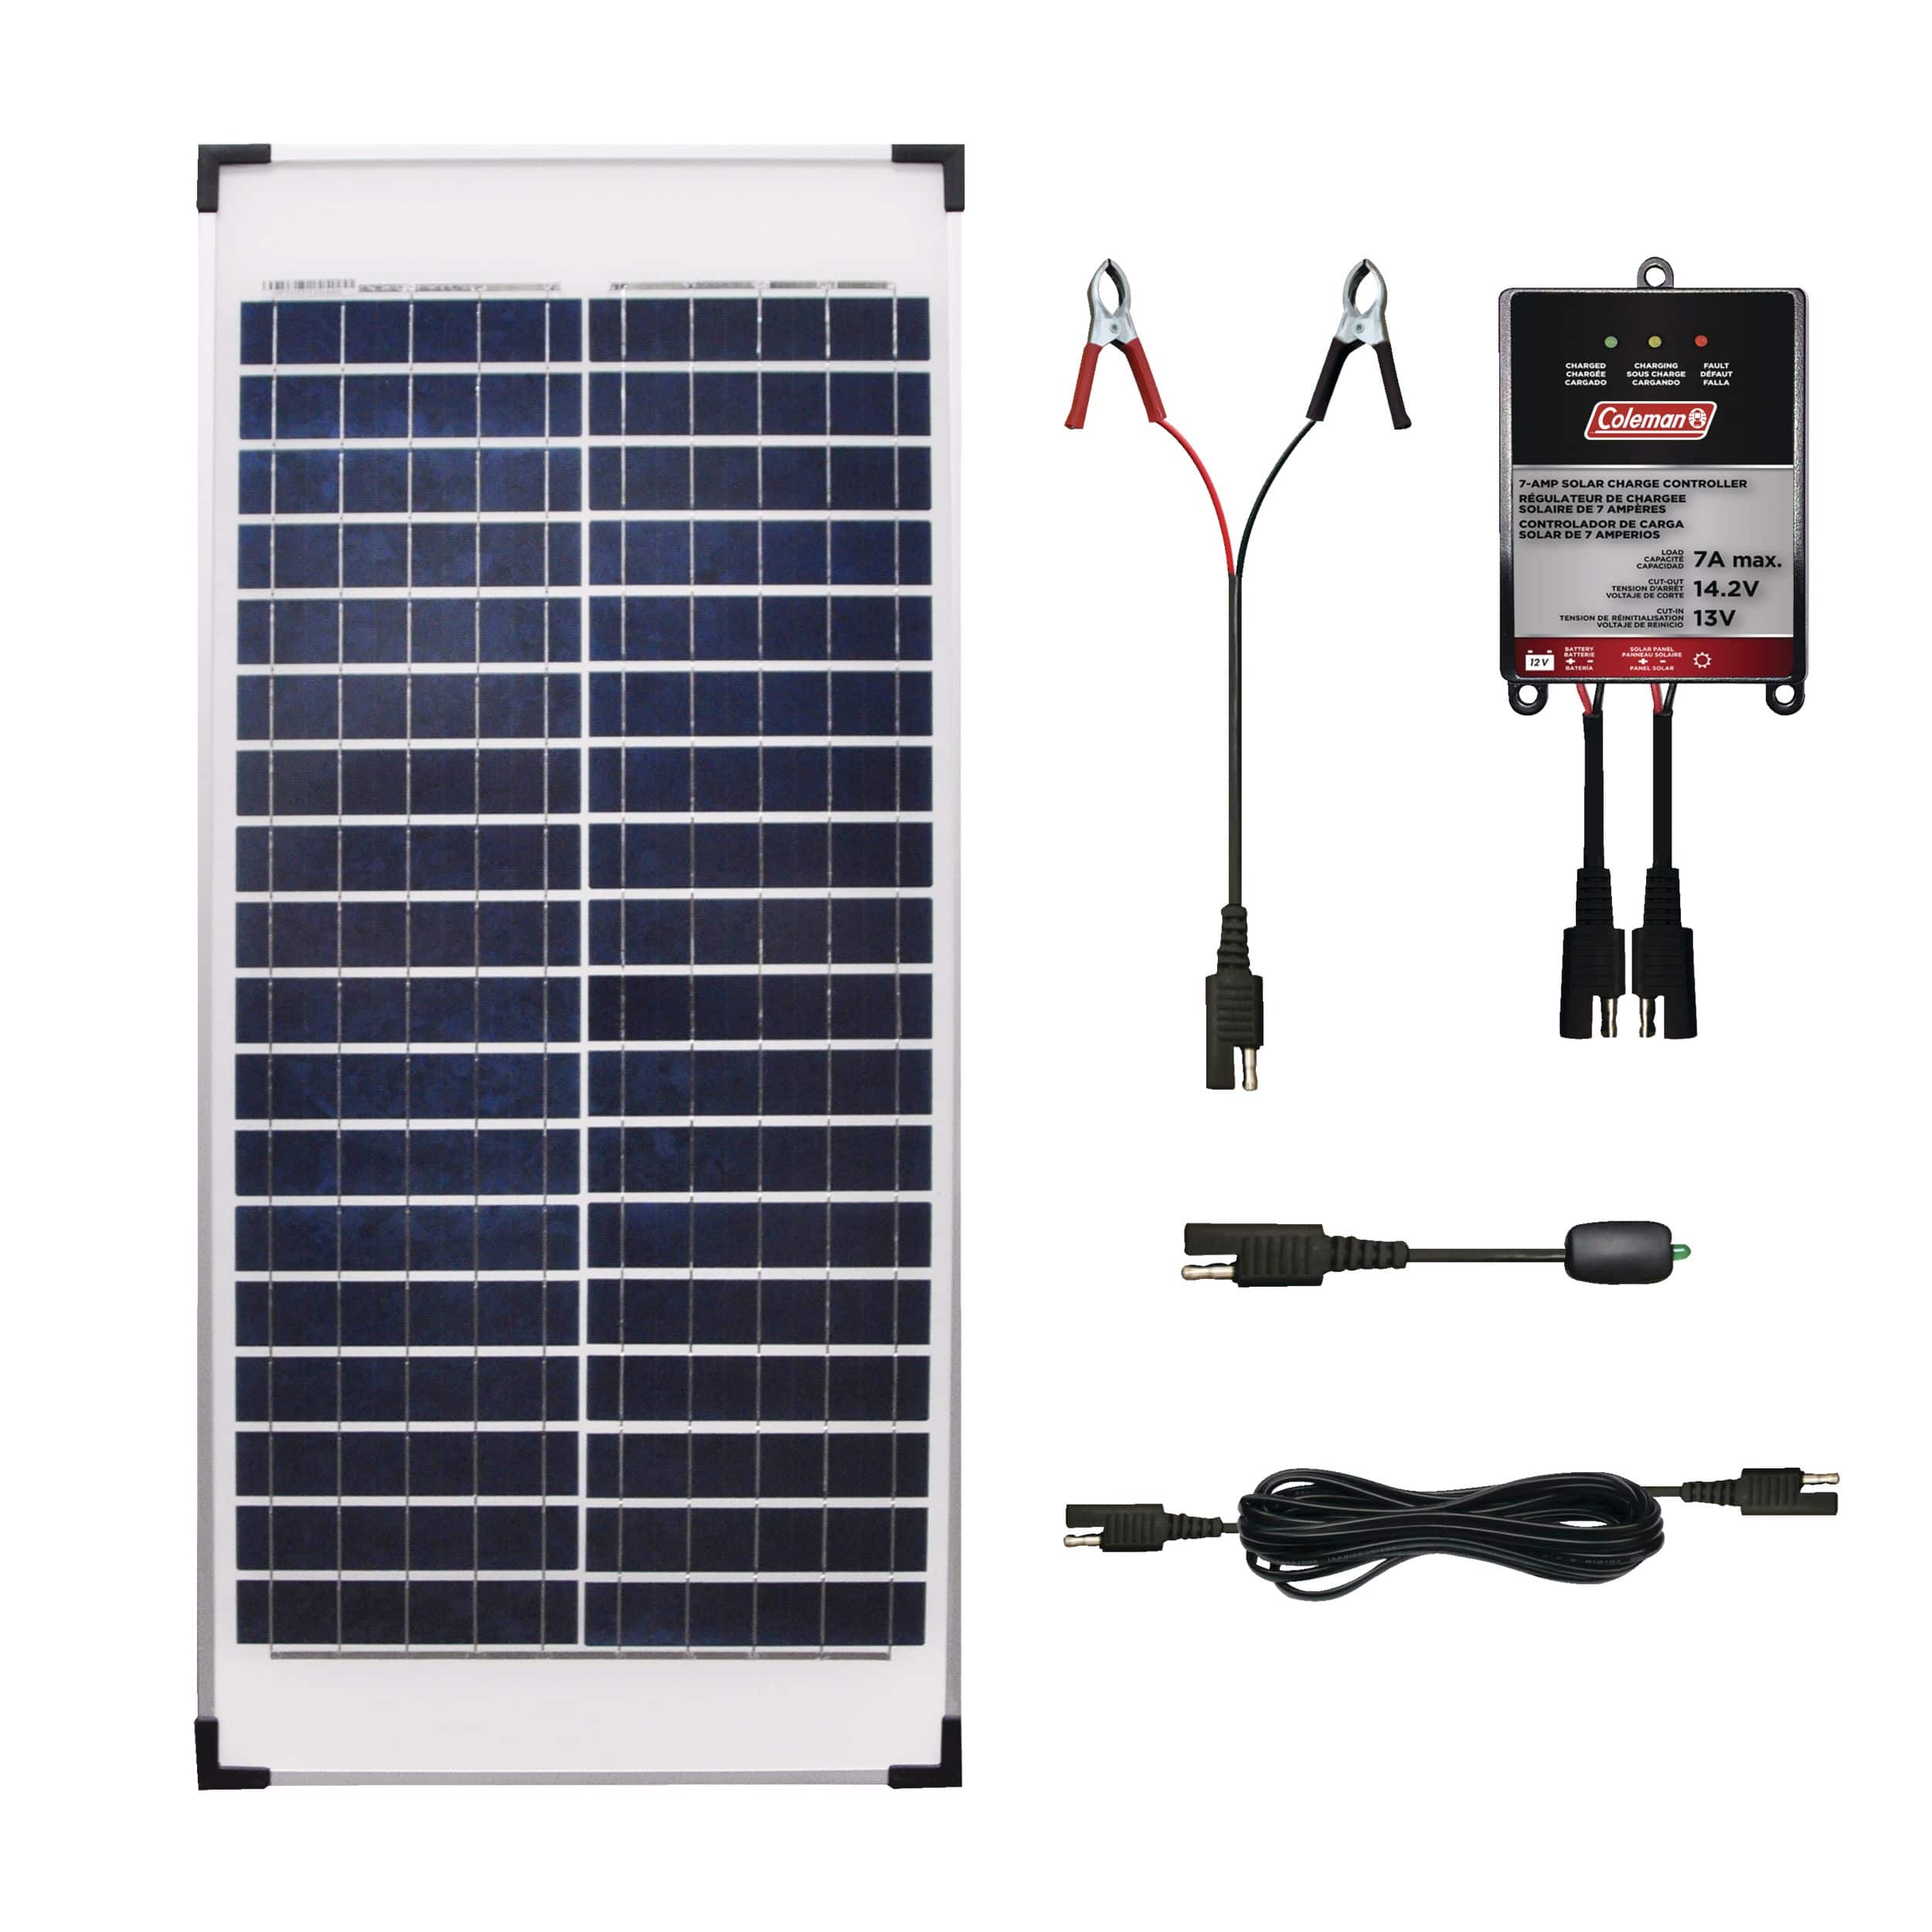 Chargeur solaire portable 5W 10W pour batteries 12V en voiture et en bateau  | ECO-WORTHY